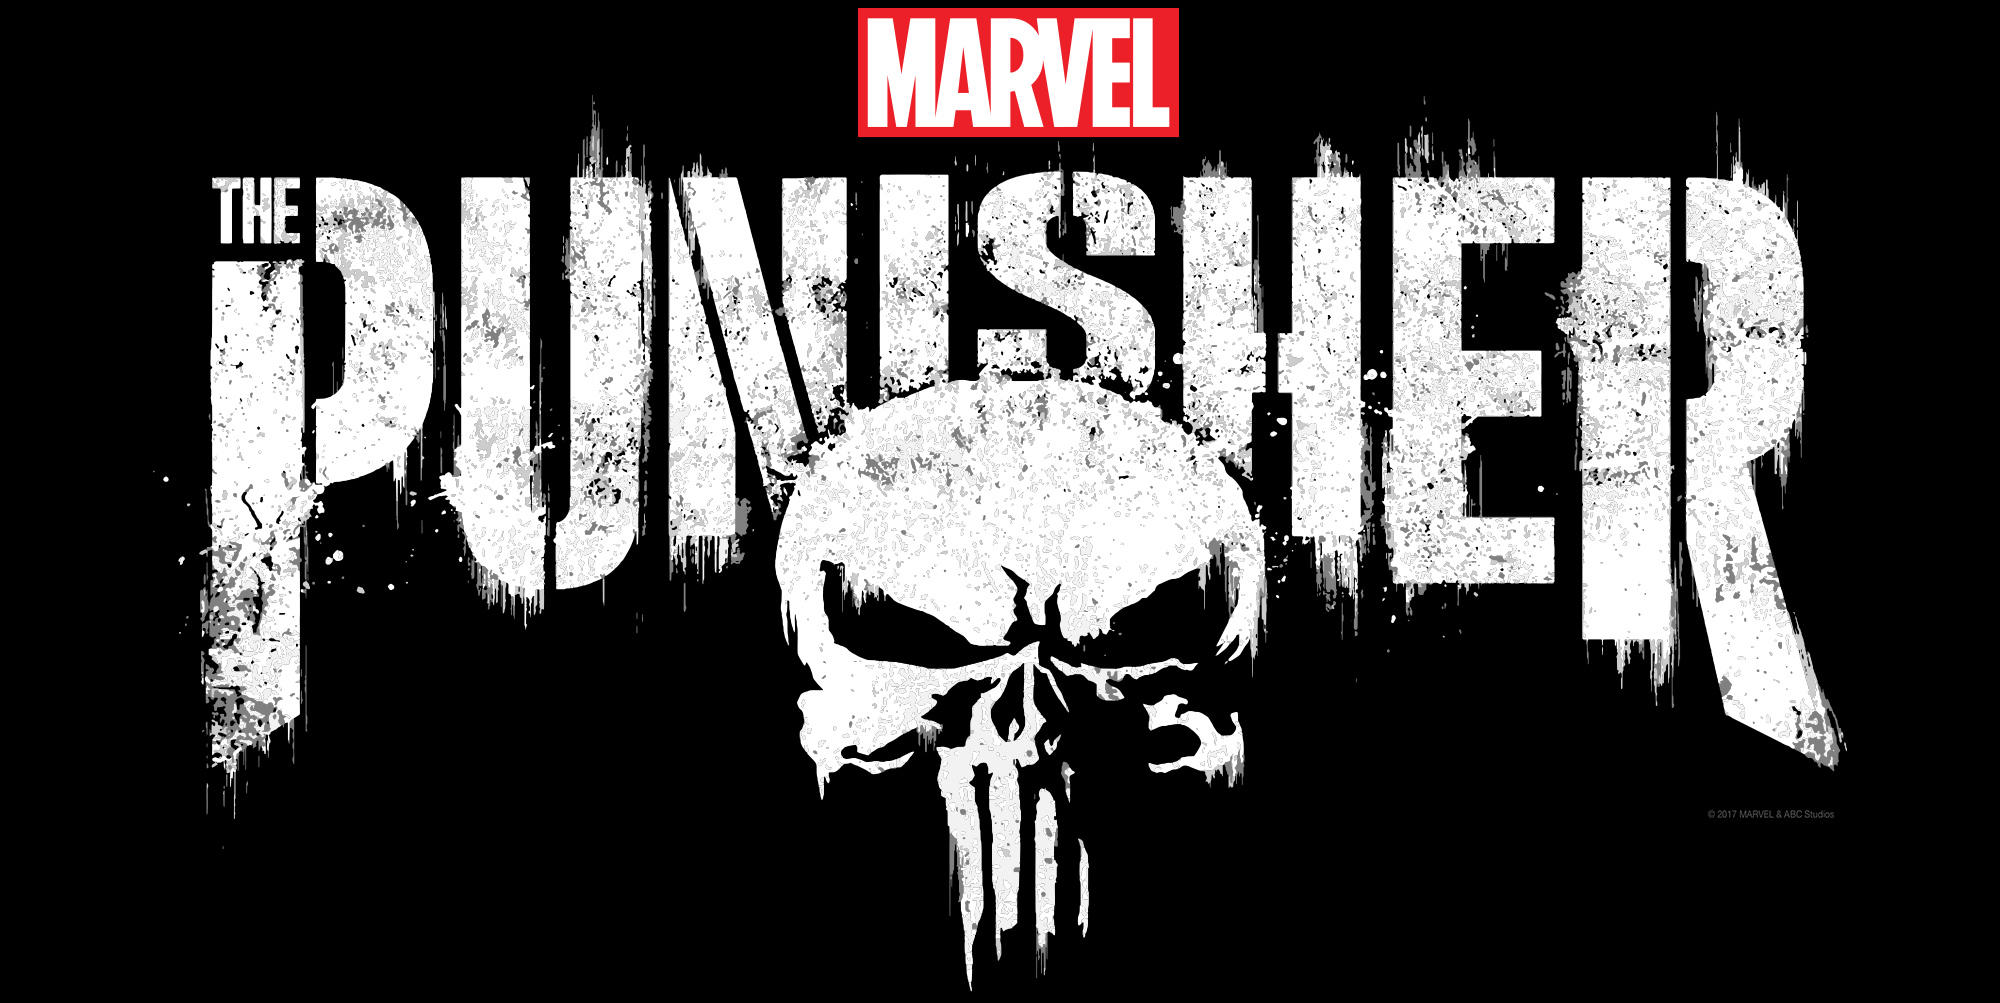 Punisher Season 1